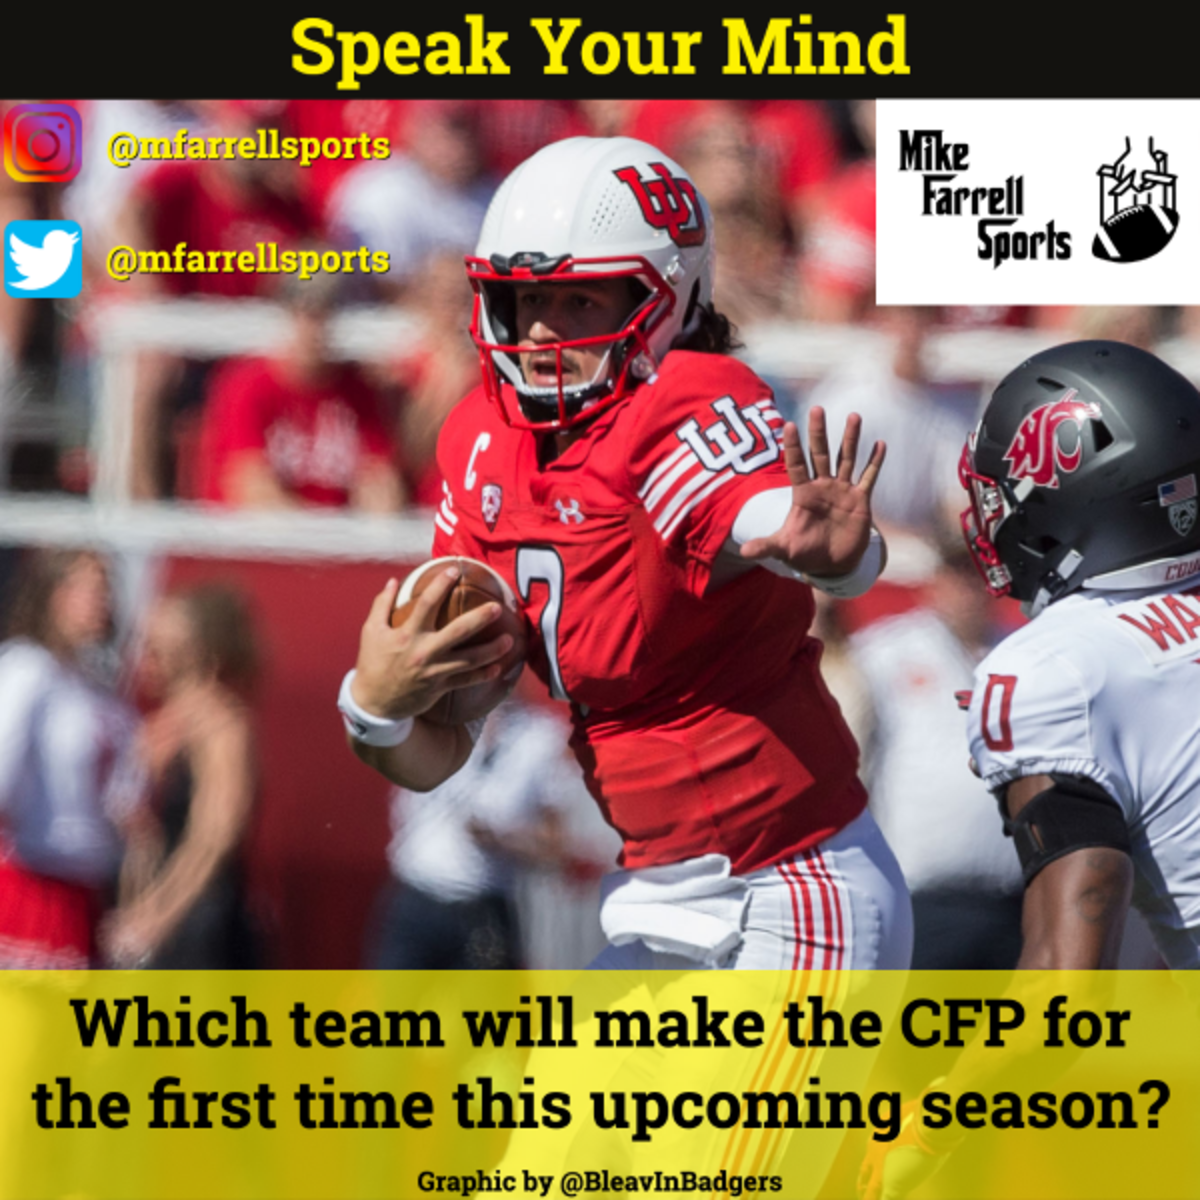 Speak Your Mind - CFP